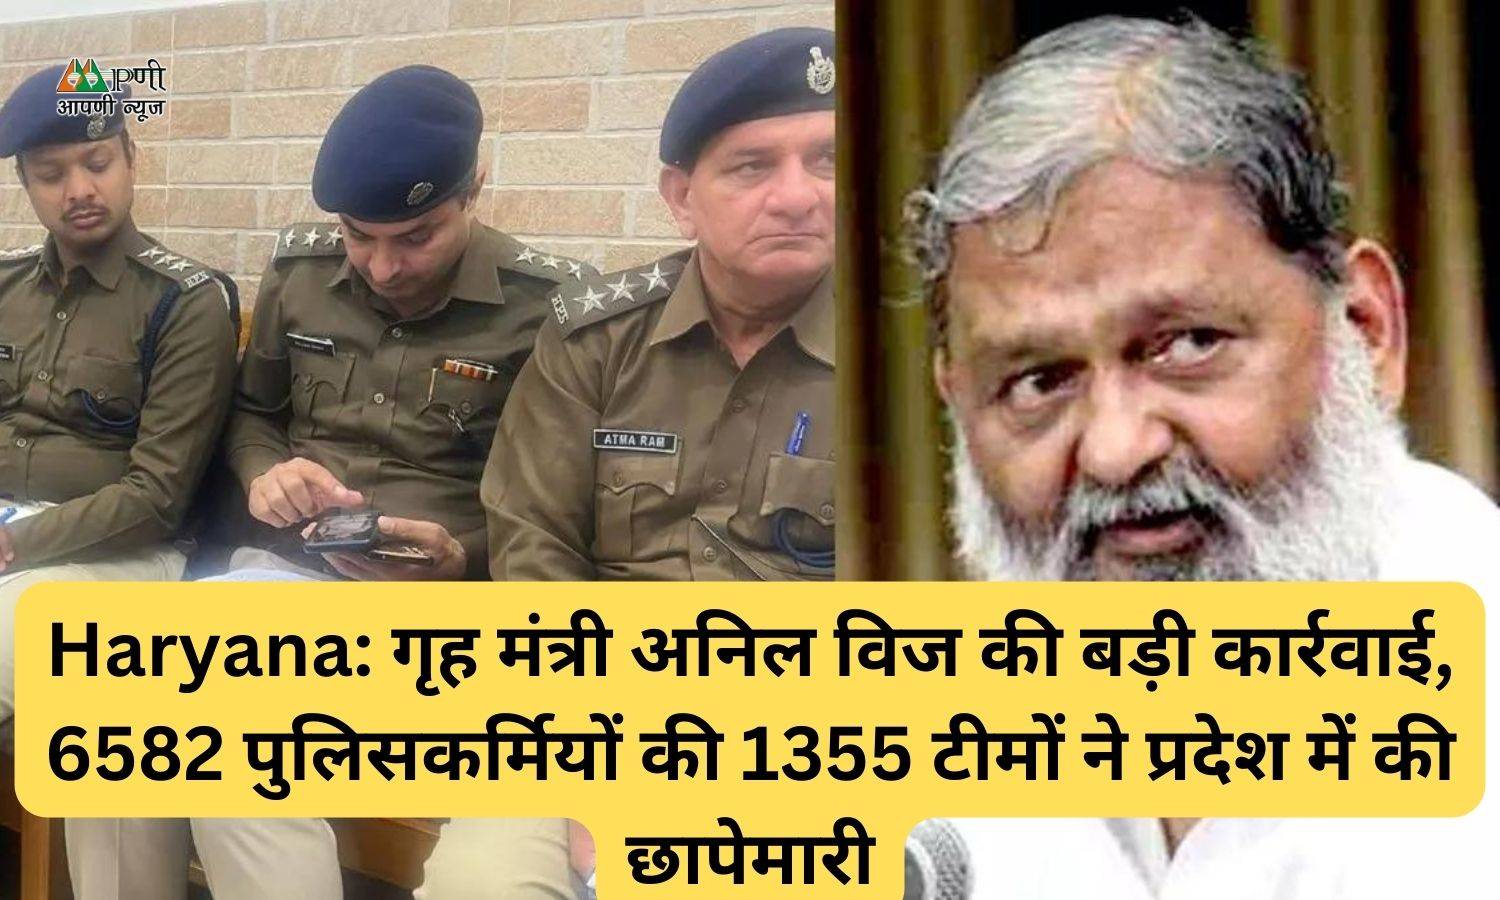 Haryana: गृह मंत्री अनिल विज की बड़ी कार्रवाई, 6582 पुलिसकर्मियों की 1355 टीमों ने प्रदेश में की छापेमारी